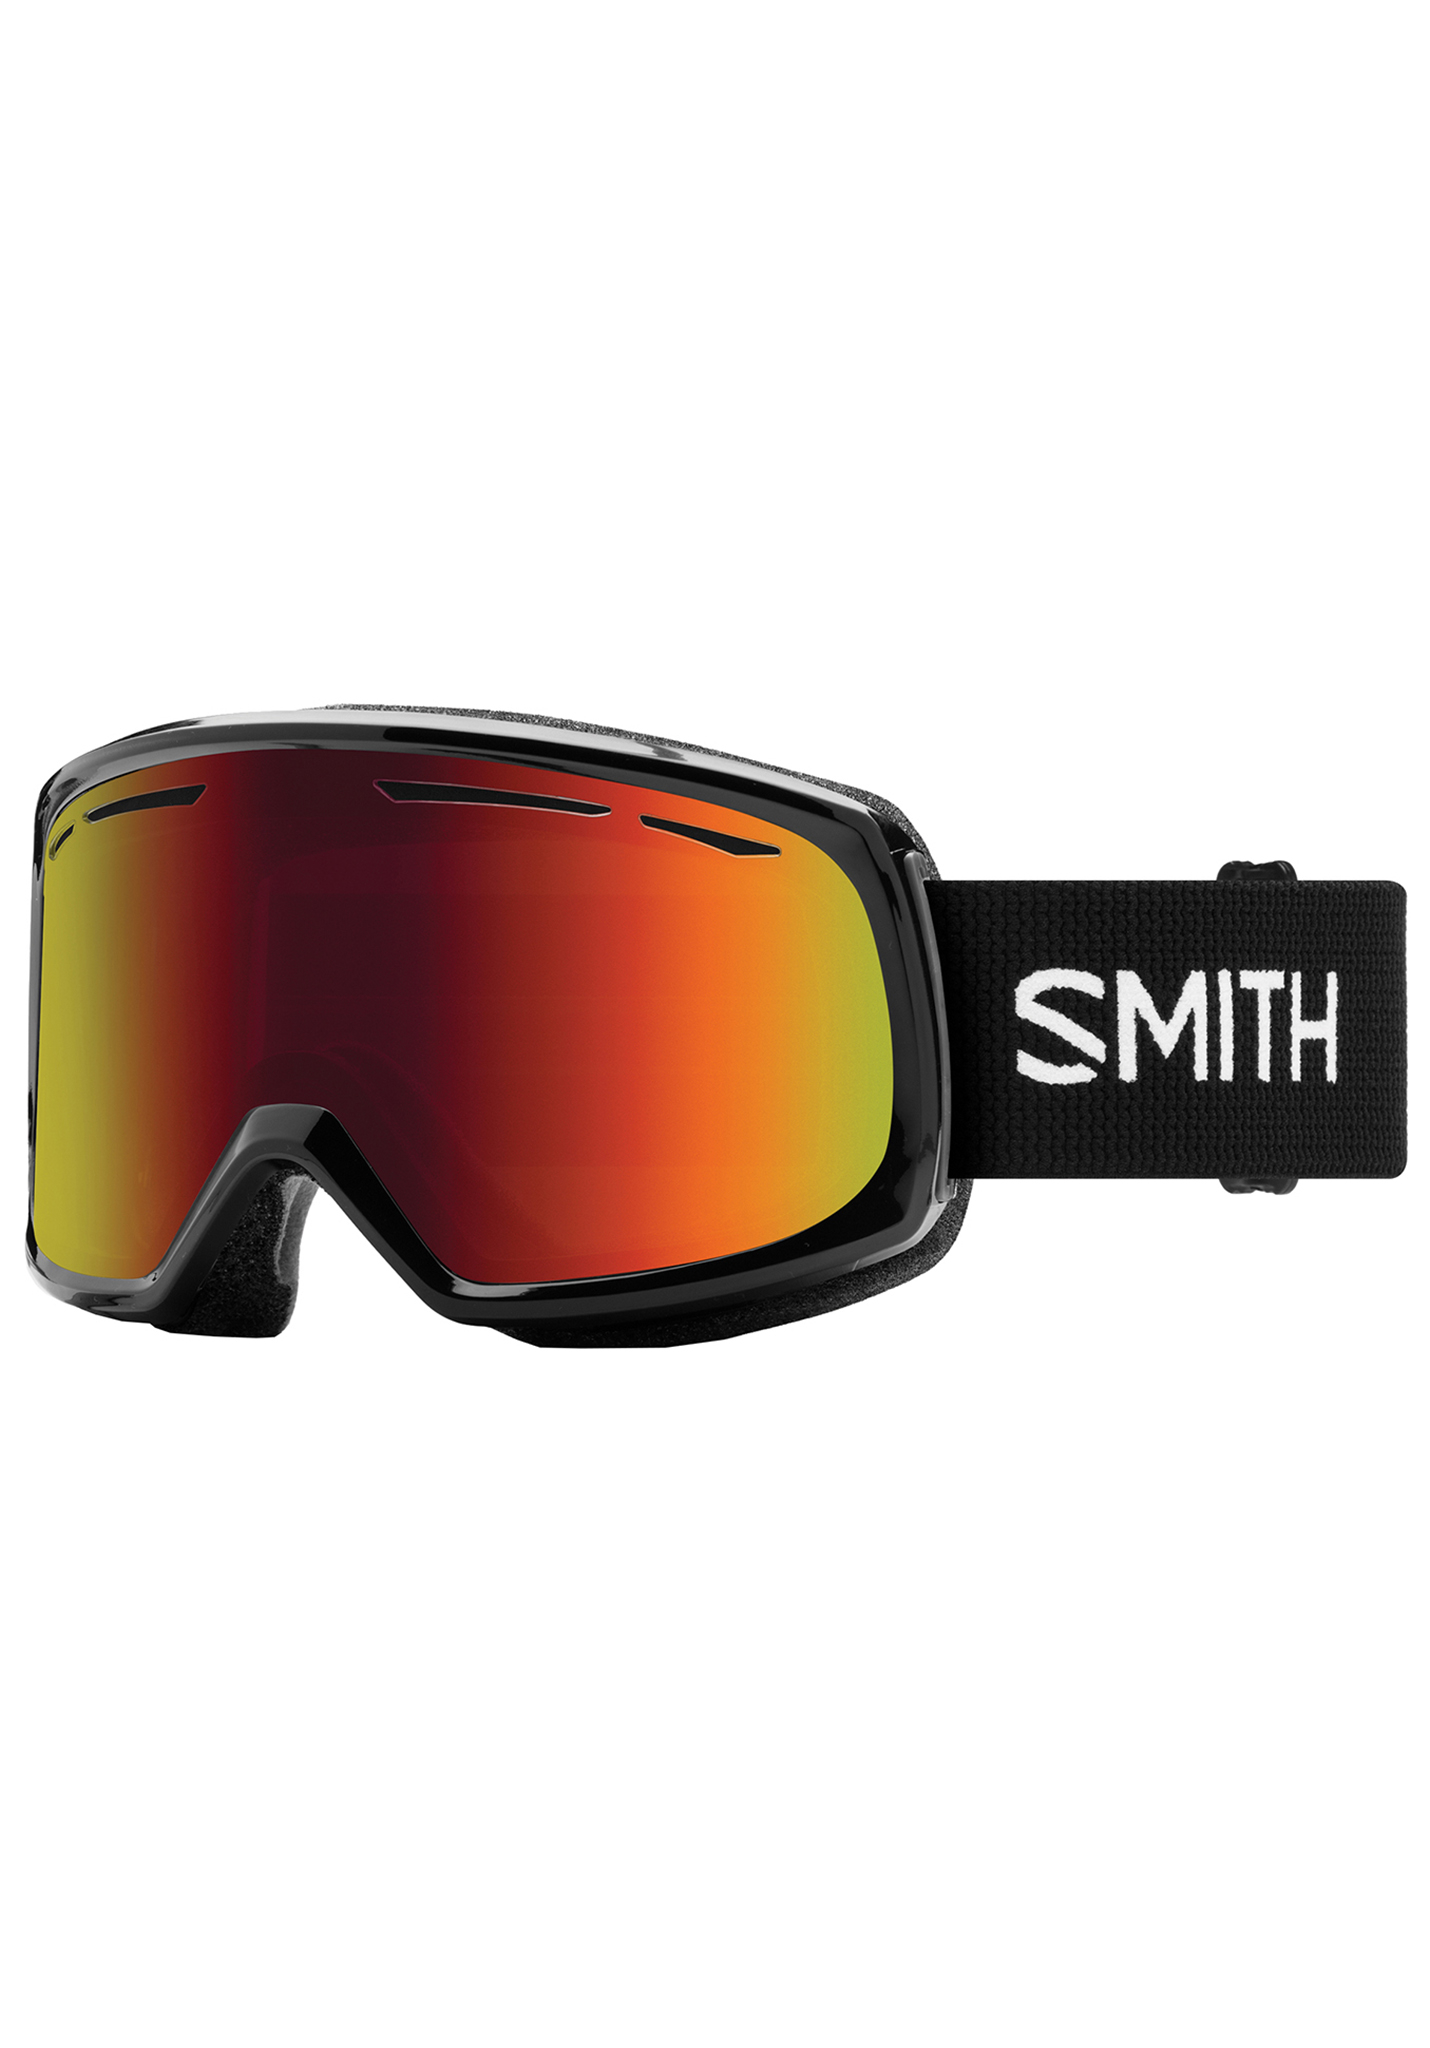 Smith Drift Snowboardbrillen rot/gelb One Size